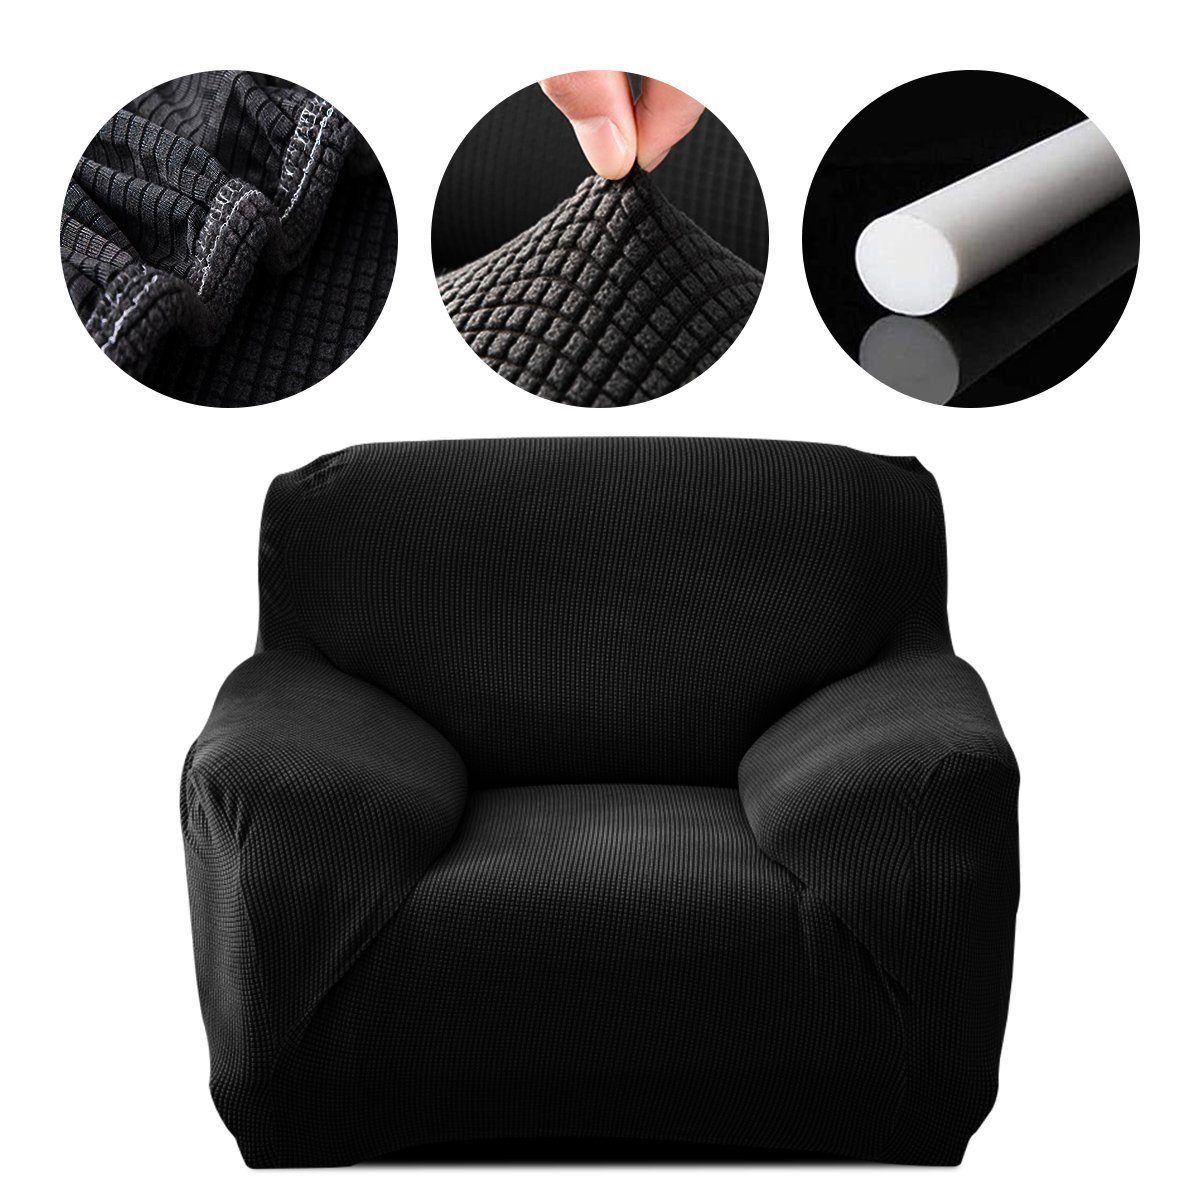 Sofahusse Sofahusse Stretch Sofa Abdeckung mit Elastische, MULISOFT, Sofabezug 1/2/3/4 Sitzer Stretch Schonbezug Couchbezug schwarz